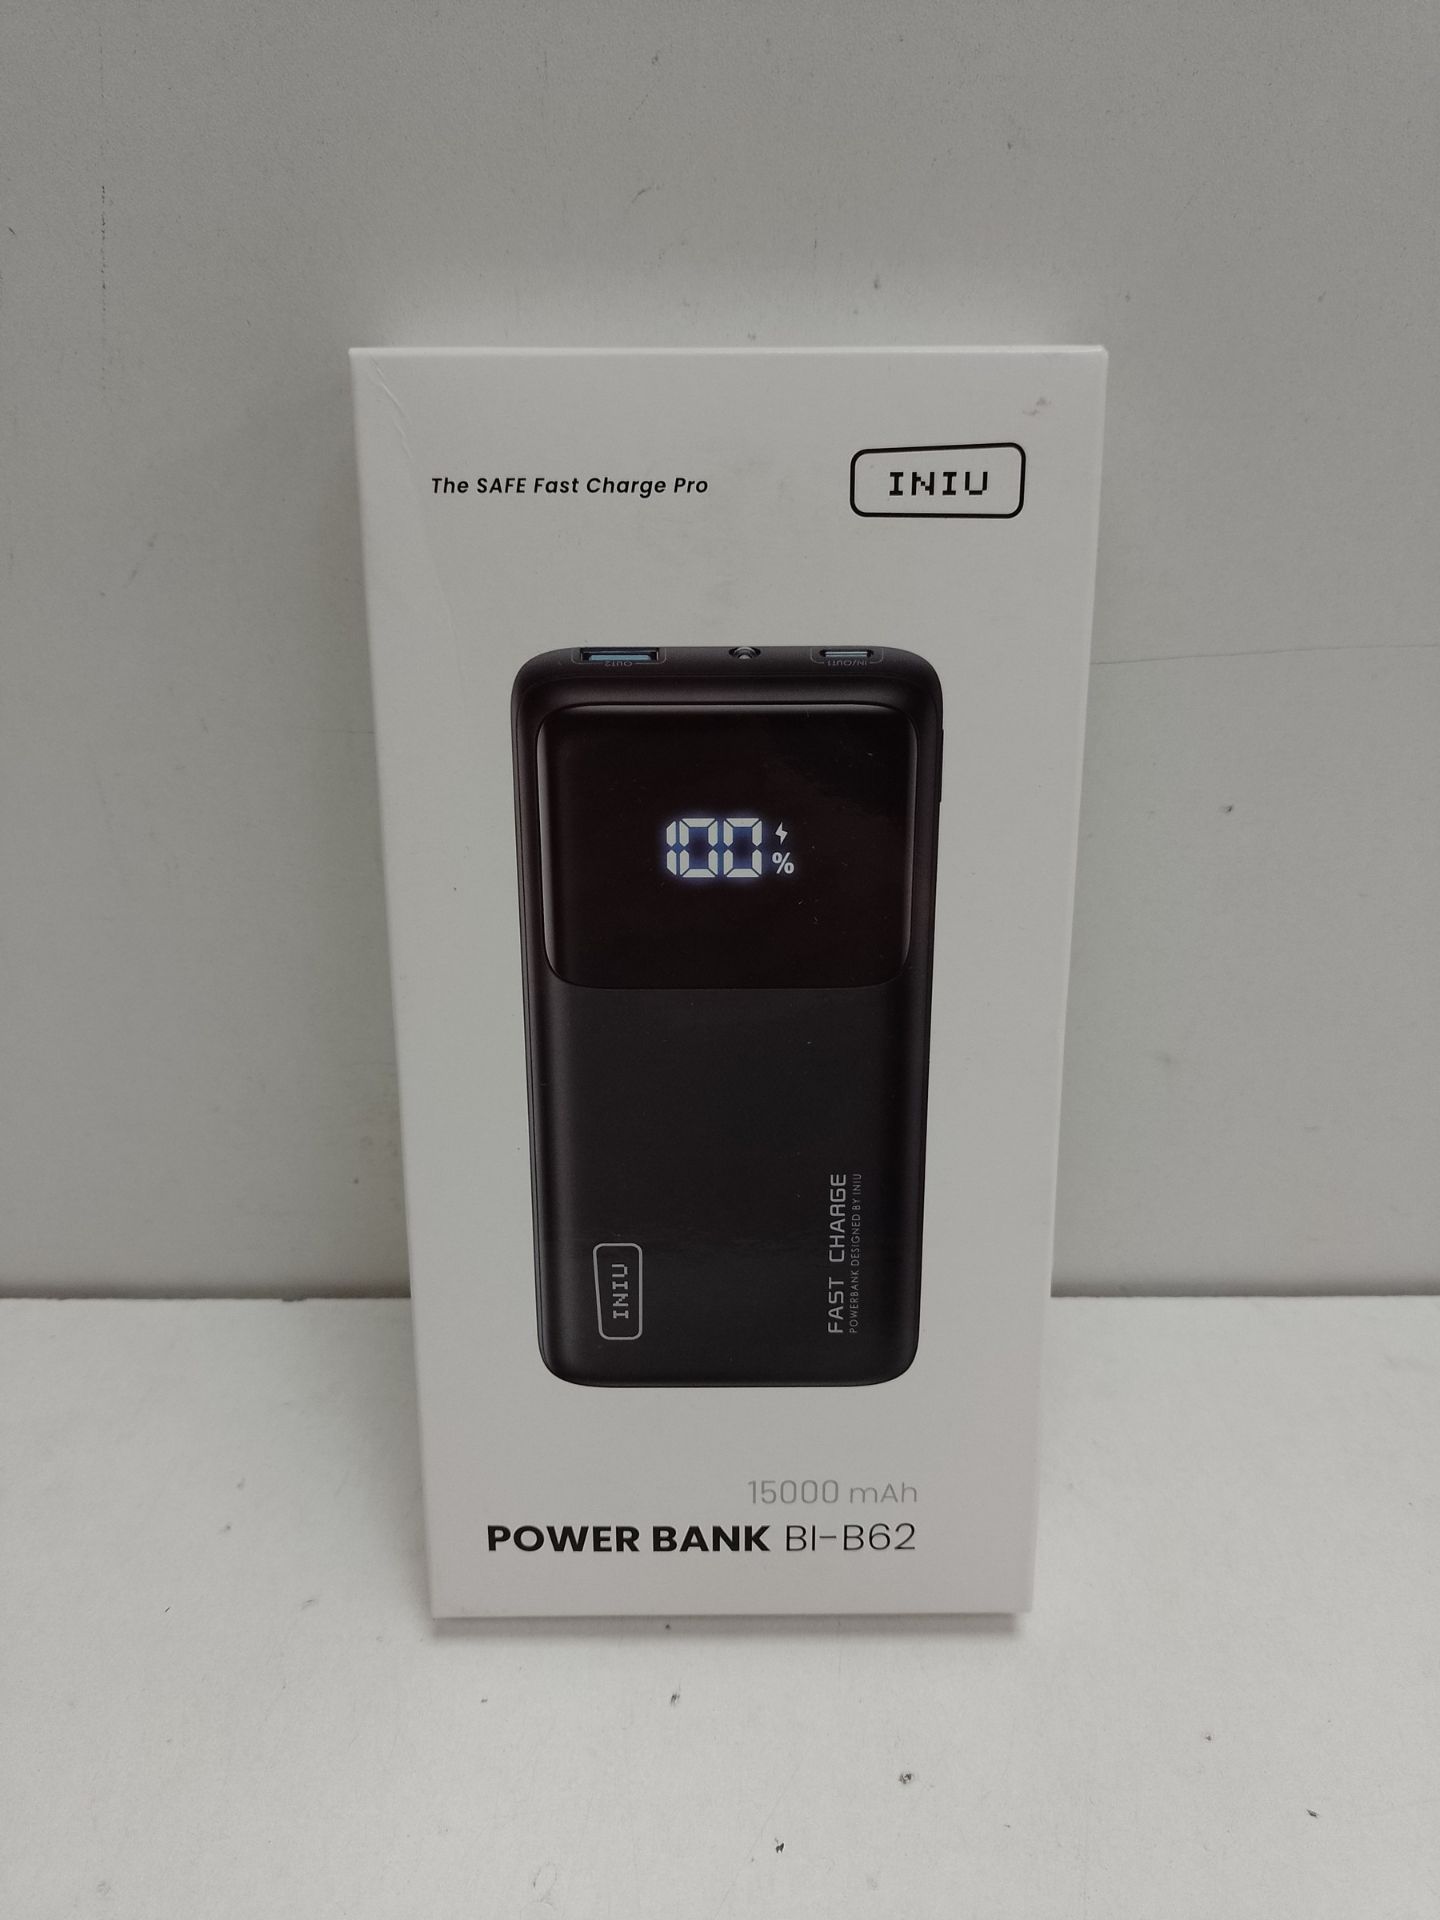 RRP £45.65 INIU Power Bank - Image 2 of 2